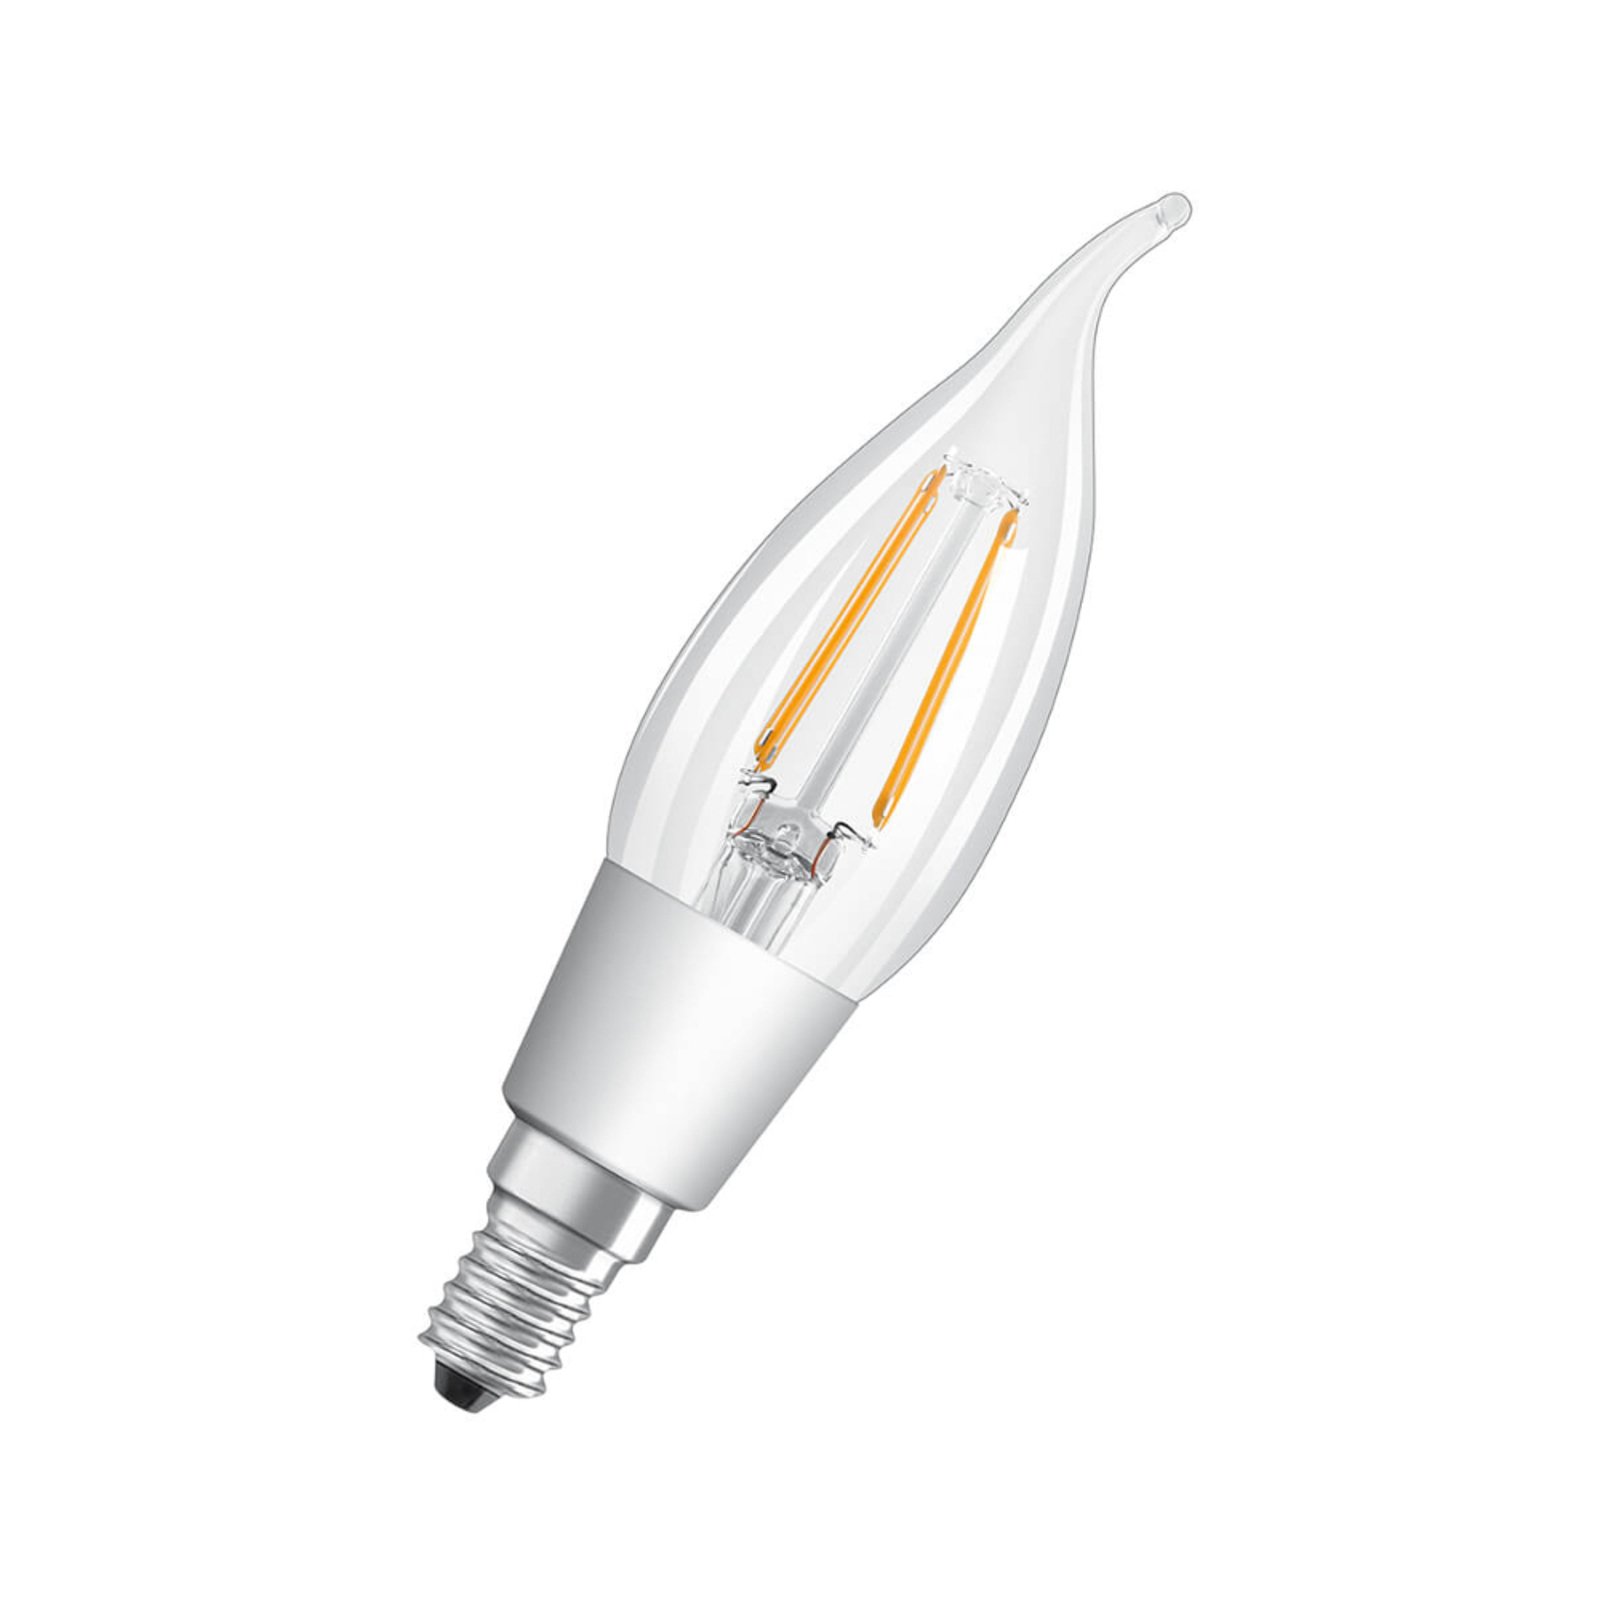 Lâmpada LED de surto de vento E14 4W branco quente regulável transparente